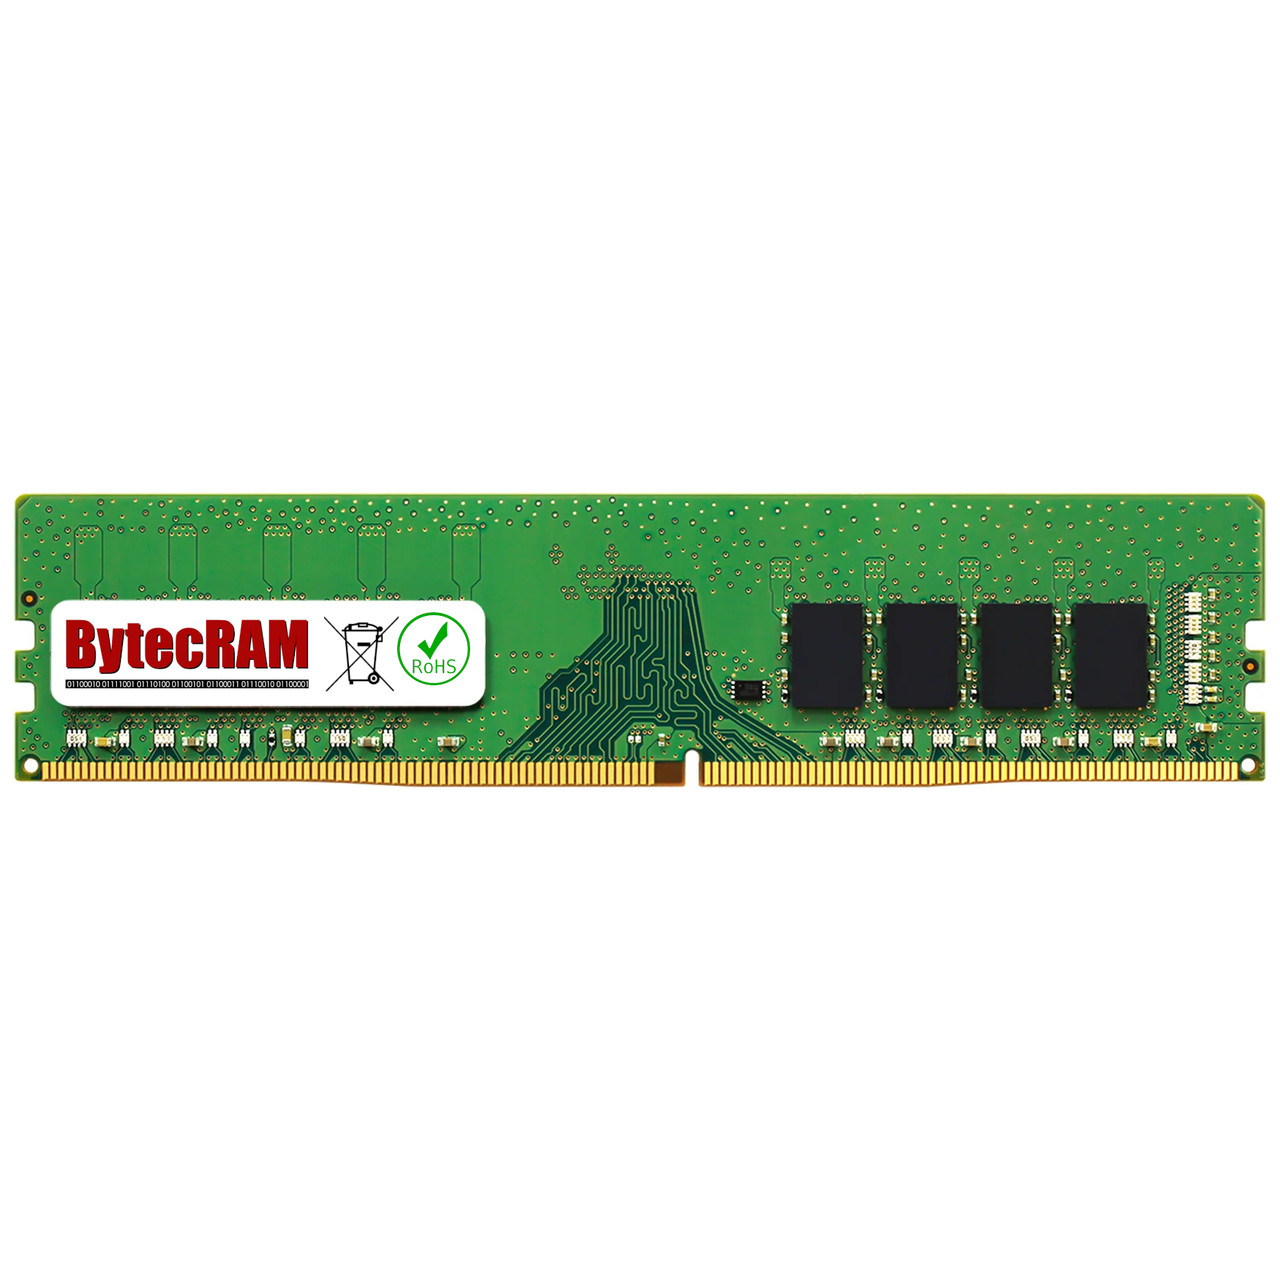 eBay*16GB Lenovo ThinkSystem ST50 7Y48 7Y49 DDR4 2666MHz UDIMM Memory RAM Upgrade